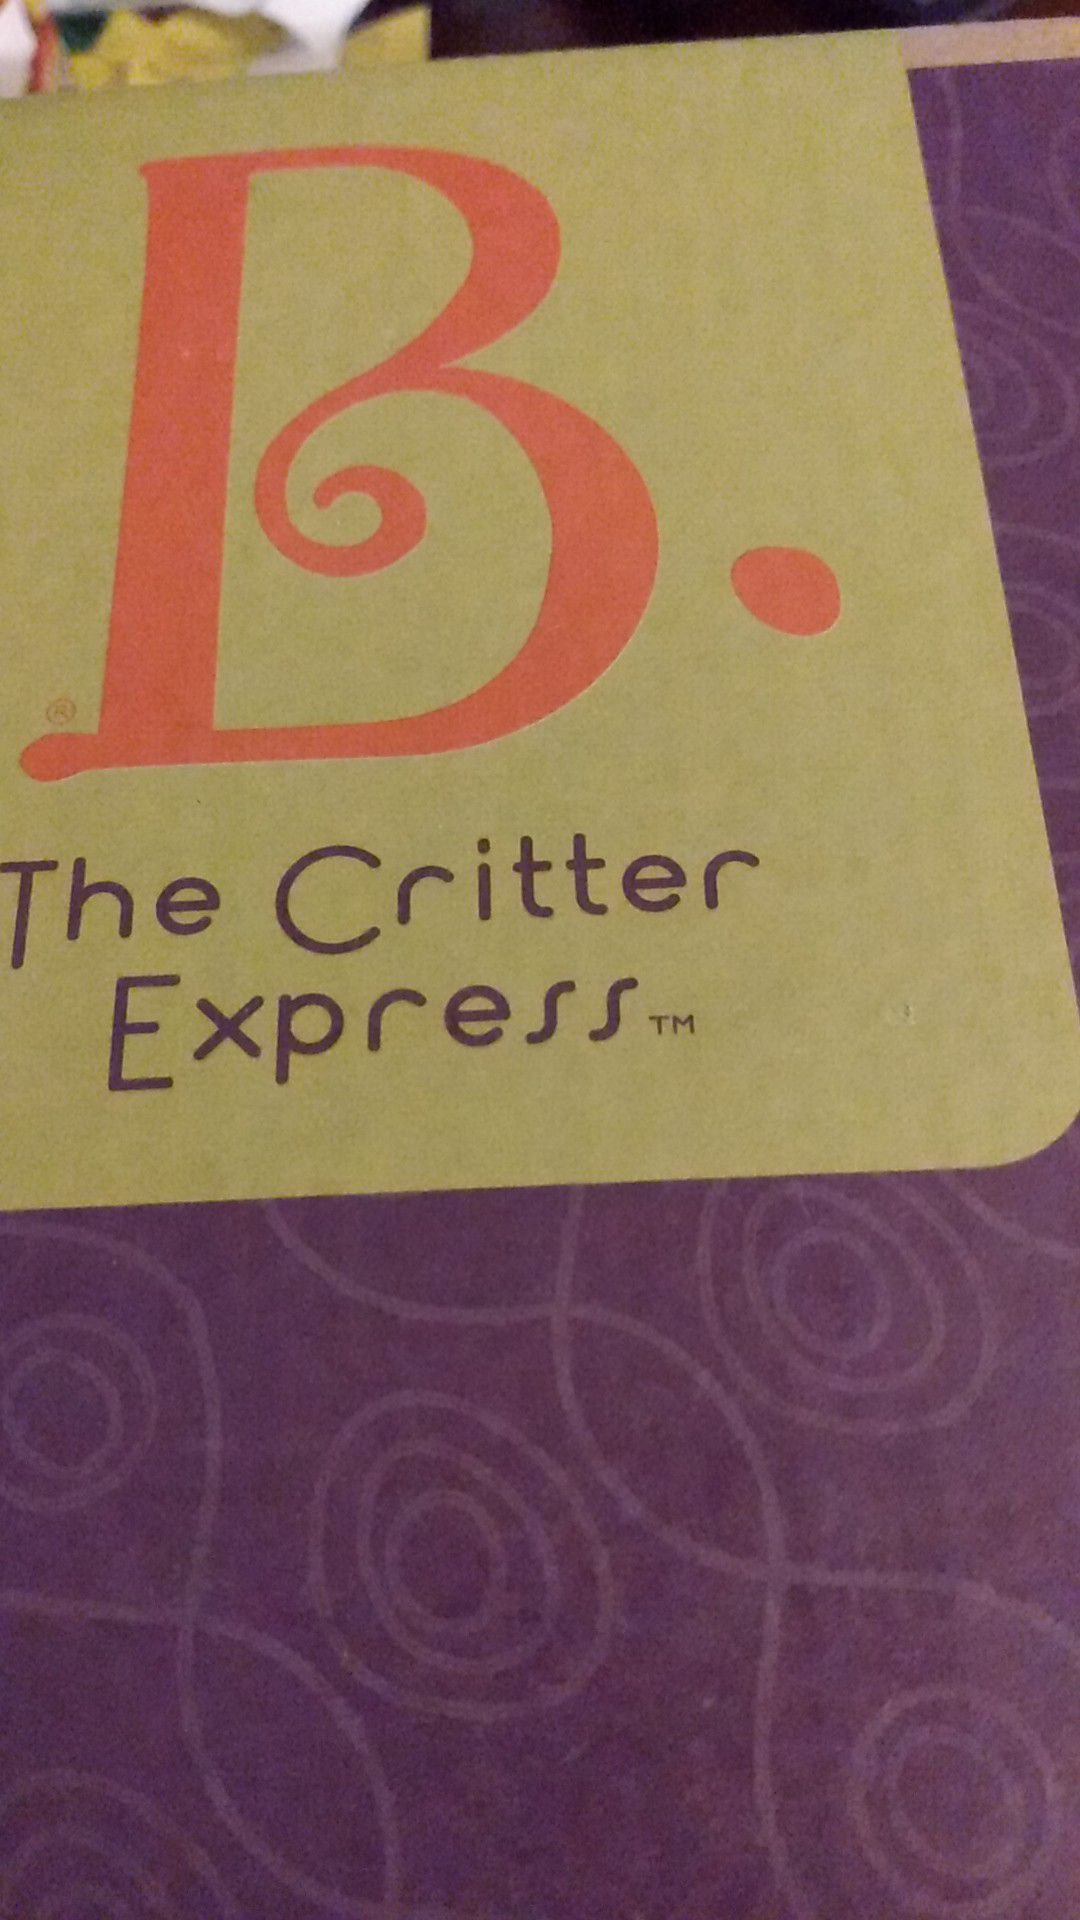 Critter express train set